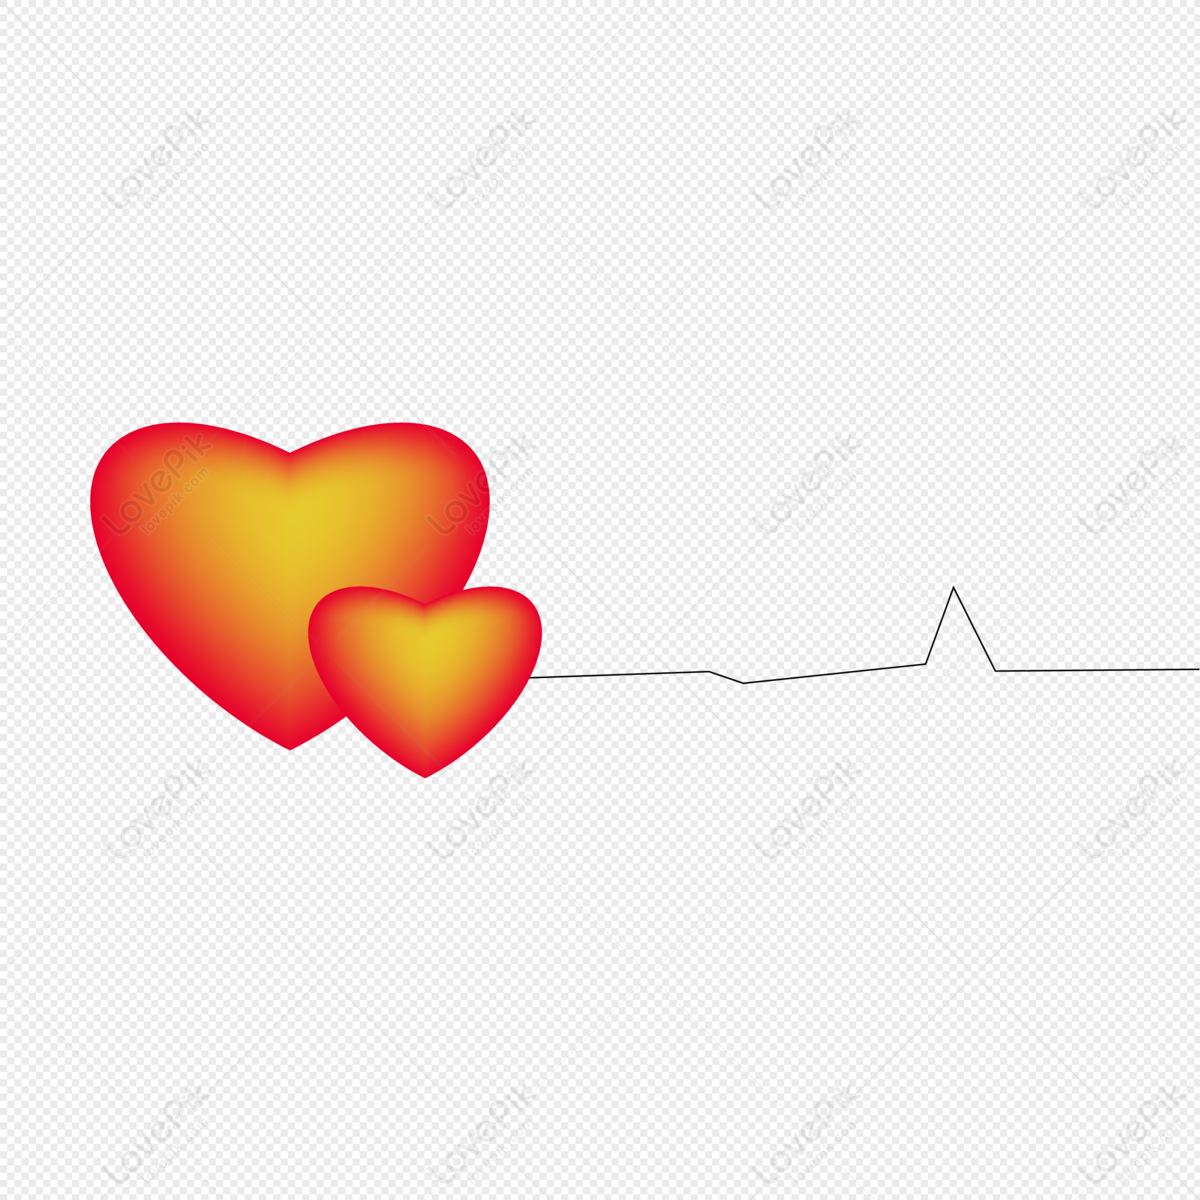 Mô hình trái tim sẽ mang đến niềm vui cho những người yêu thích ngành y tế hoặc đơn giản là những người ưa thích sự độc đáo. Hãy chiêm ngưỡng và khám phá những chiếc mô hình trái tim đáng yêu và độc đáo bạn nhé!